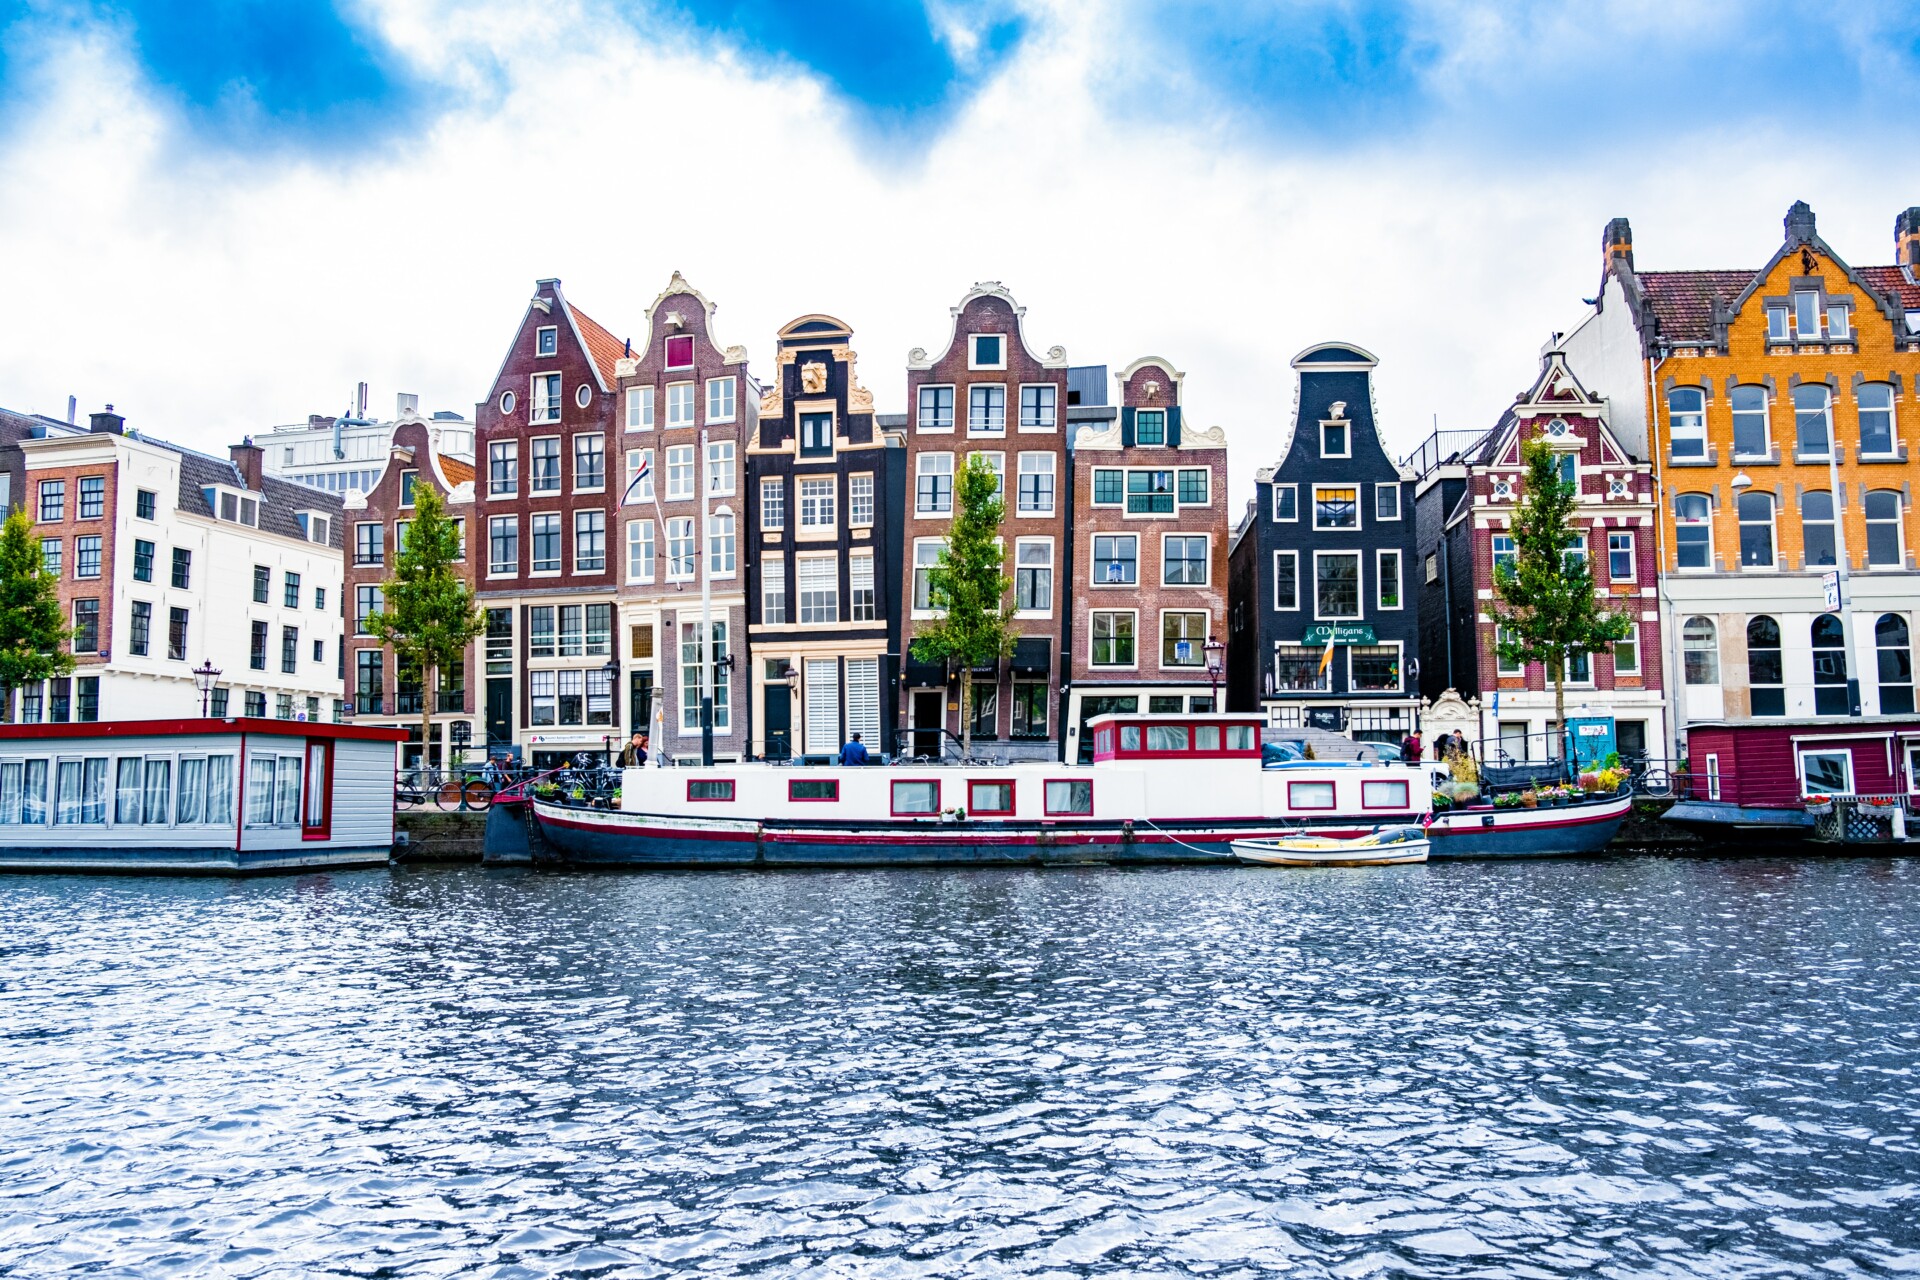 Blick auf traditionelle niederländische Häuser mit Giebelfassaden in einer Reihe an einem Kanal in Amsterdam. Im Vordergrund ist das schimmernde Wasser des Kanals, vor den Häusern liegen Hausboote vertäut. Wolken und ein blauer Himmel vervollständigen die Szenerie.